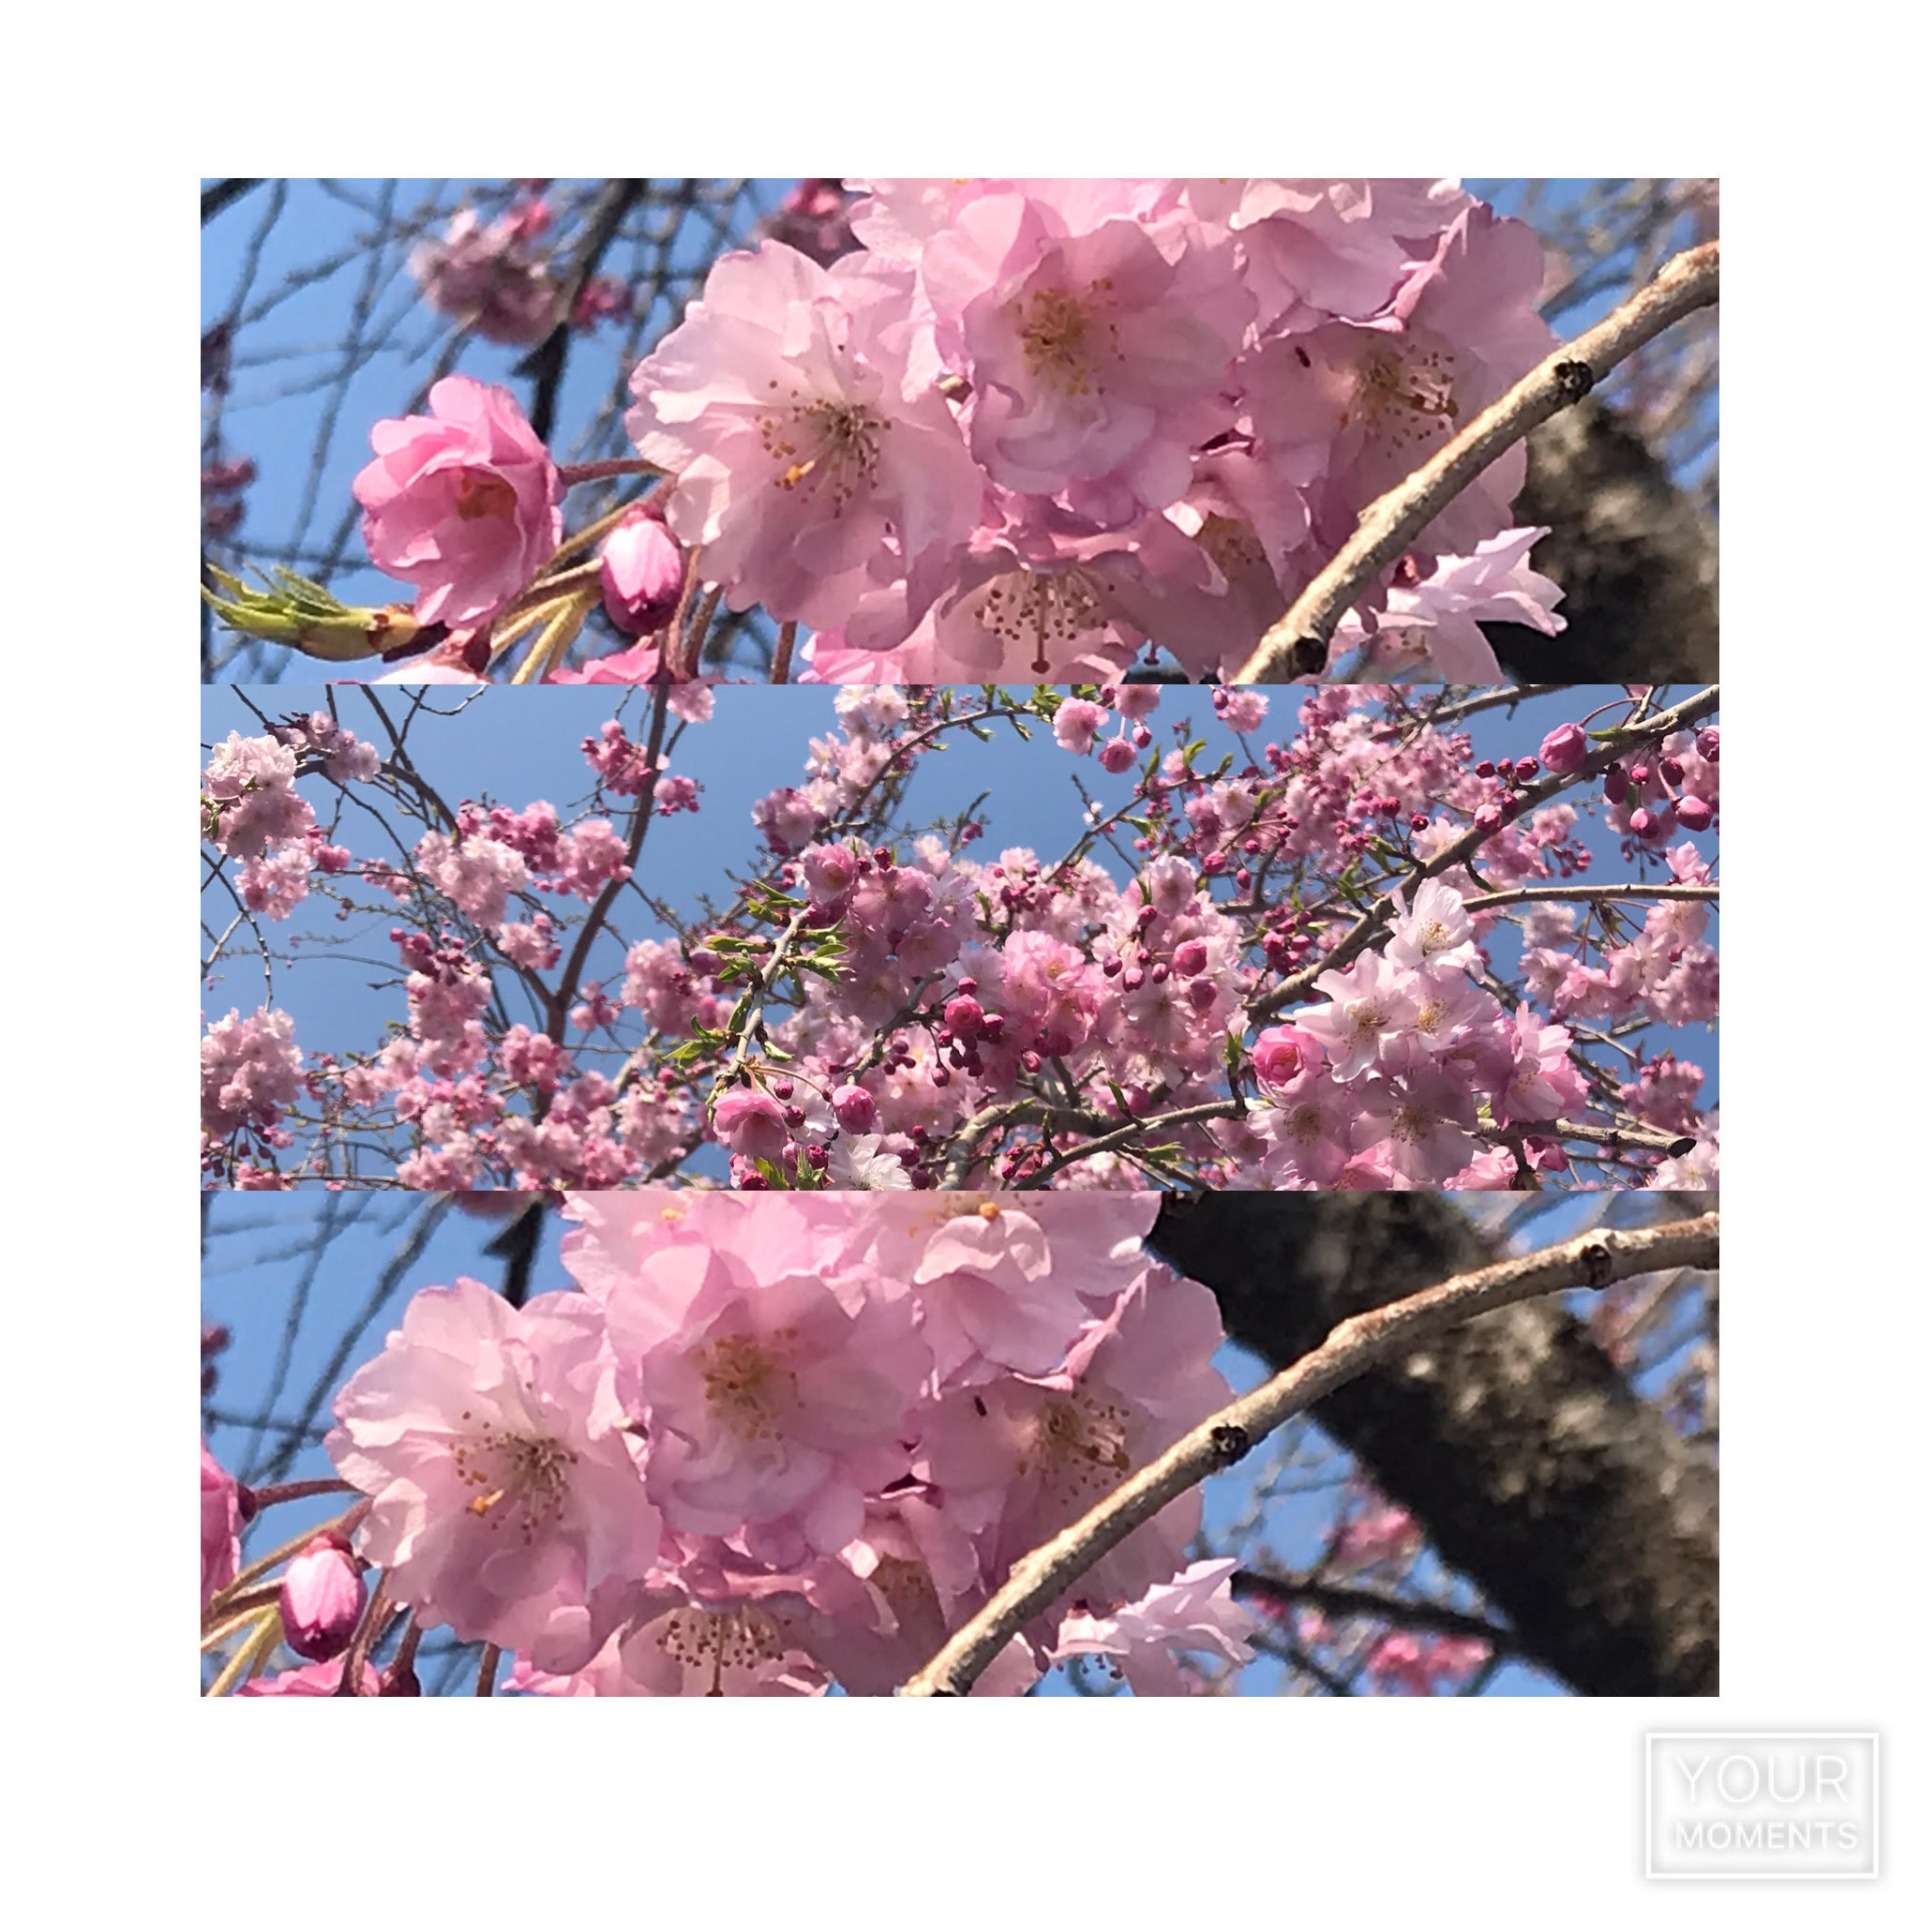 まだ間に合います！お花見弁当持って桜の下で昼ごはん！